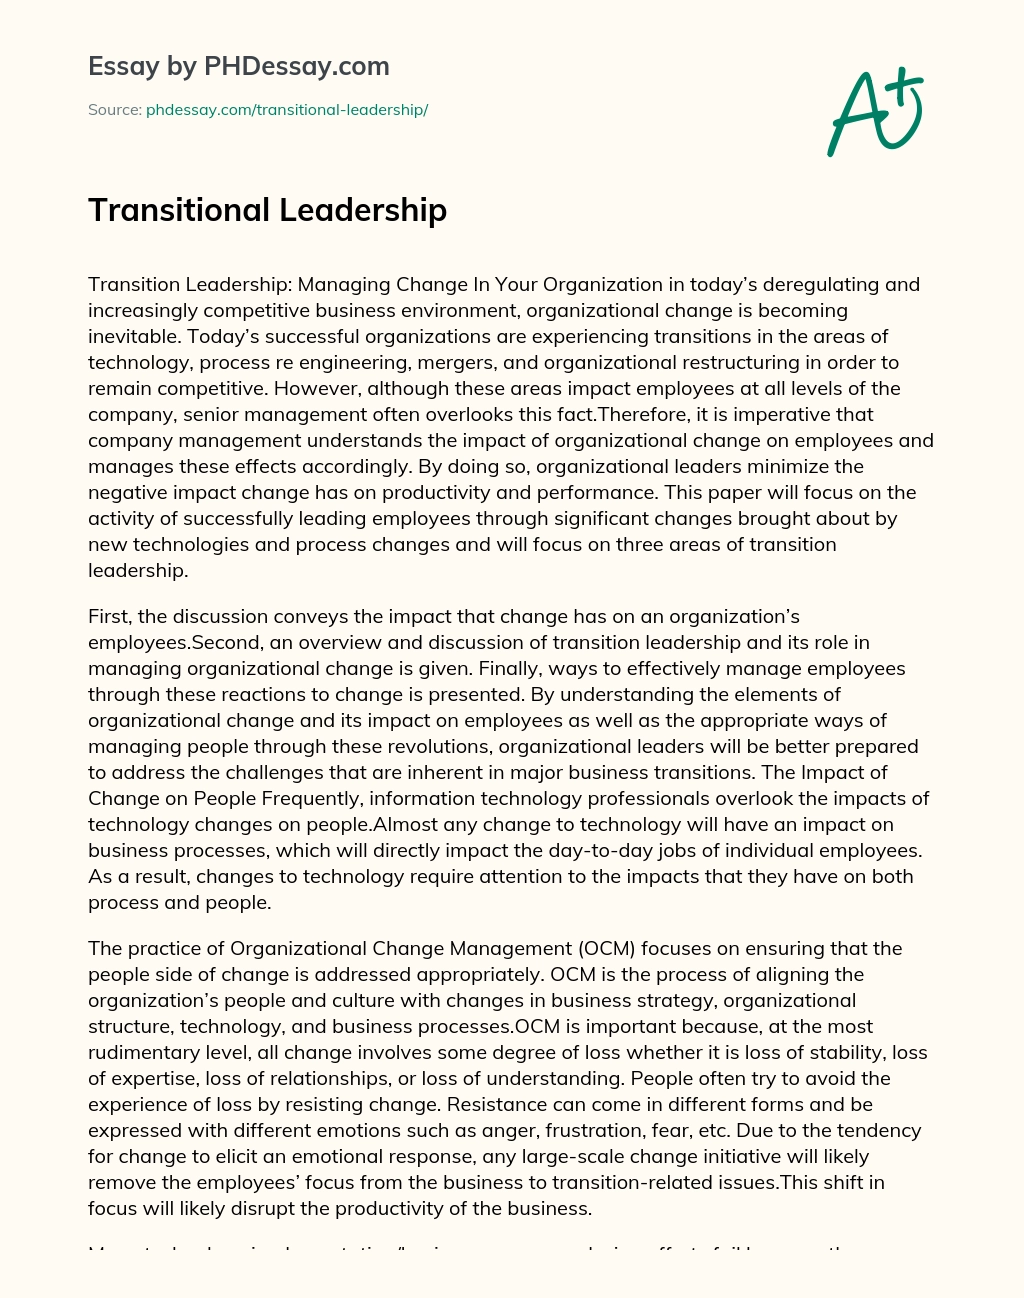 Transitional Leadership essay